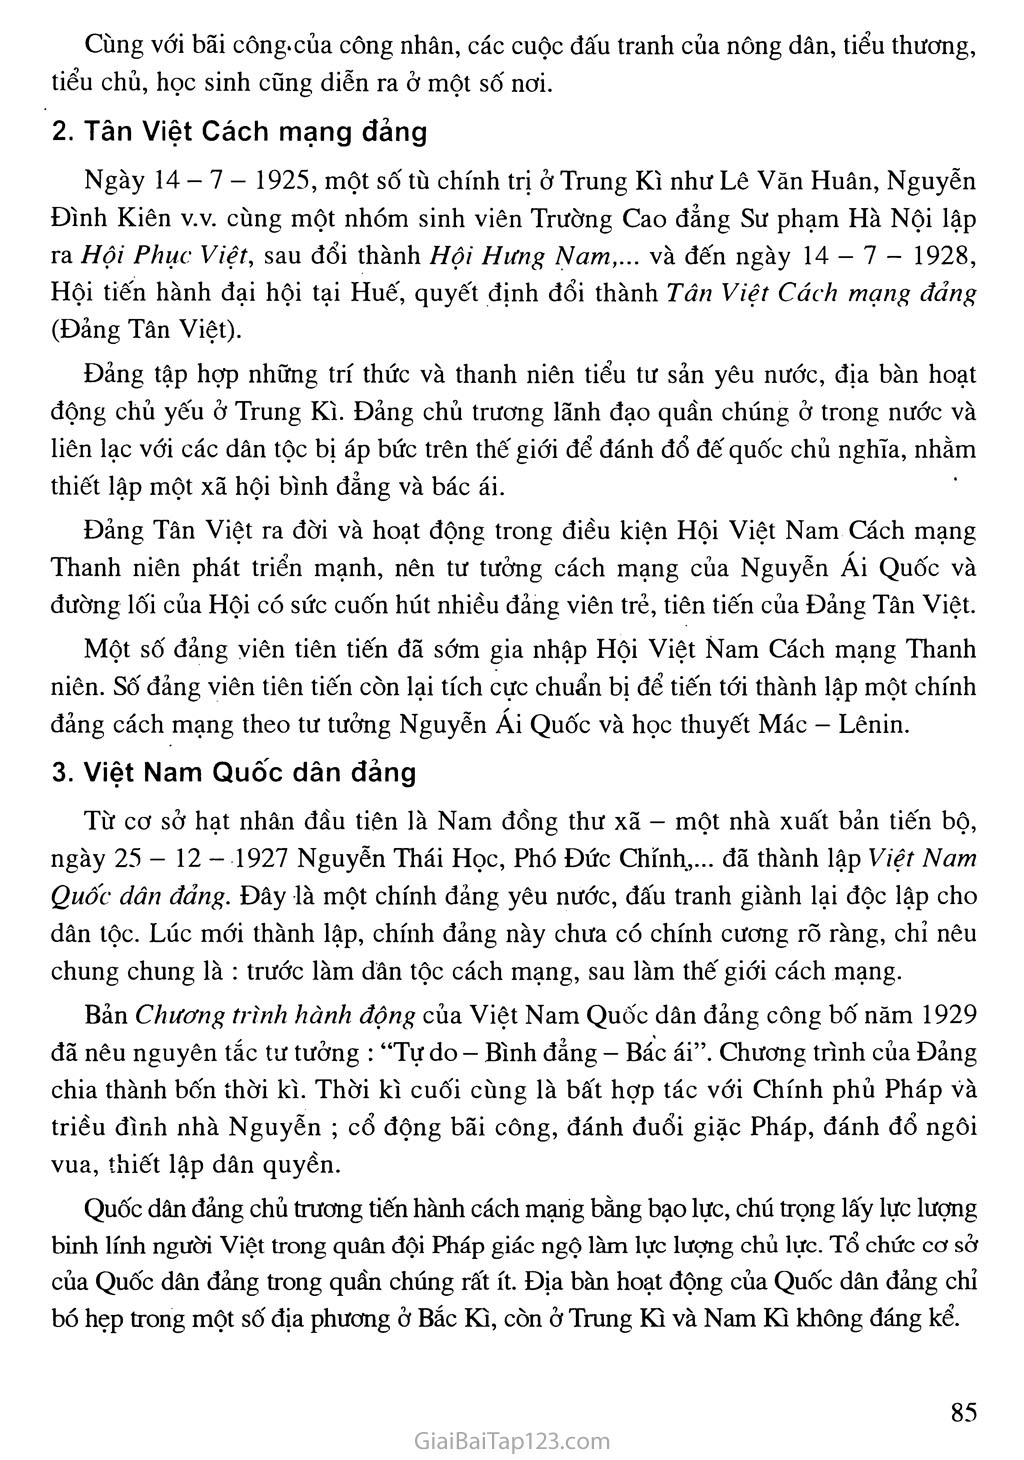 Bài 13. Phong trào dân tộc dân chủ ở Việt Nam từ năm 1925 đến năm 1930 trang 3